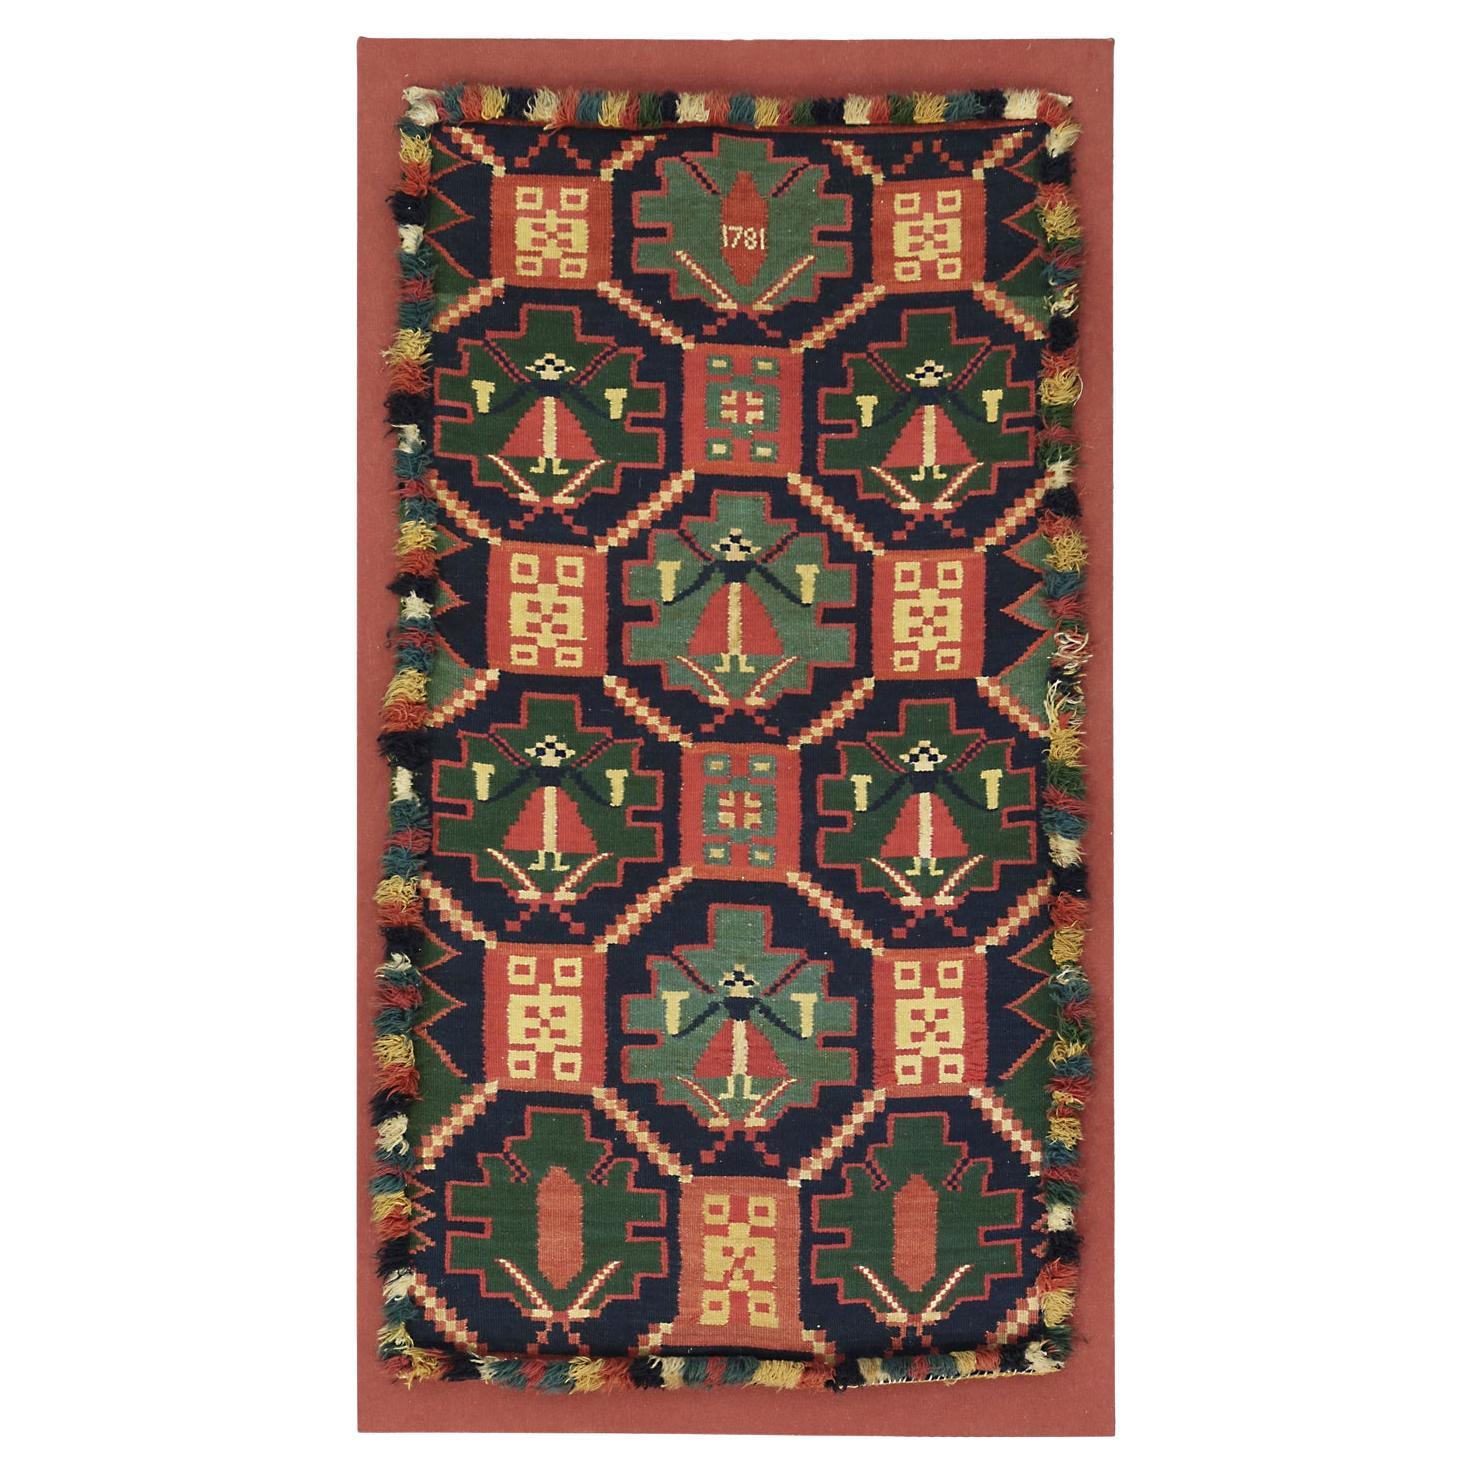 Rollakan-Textilien im skandinavischen Stil  Scandi-Stil